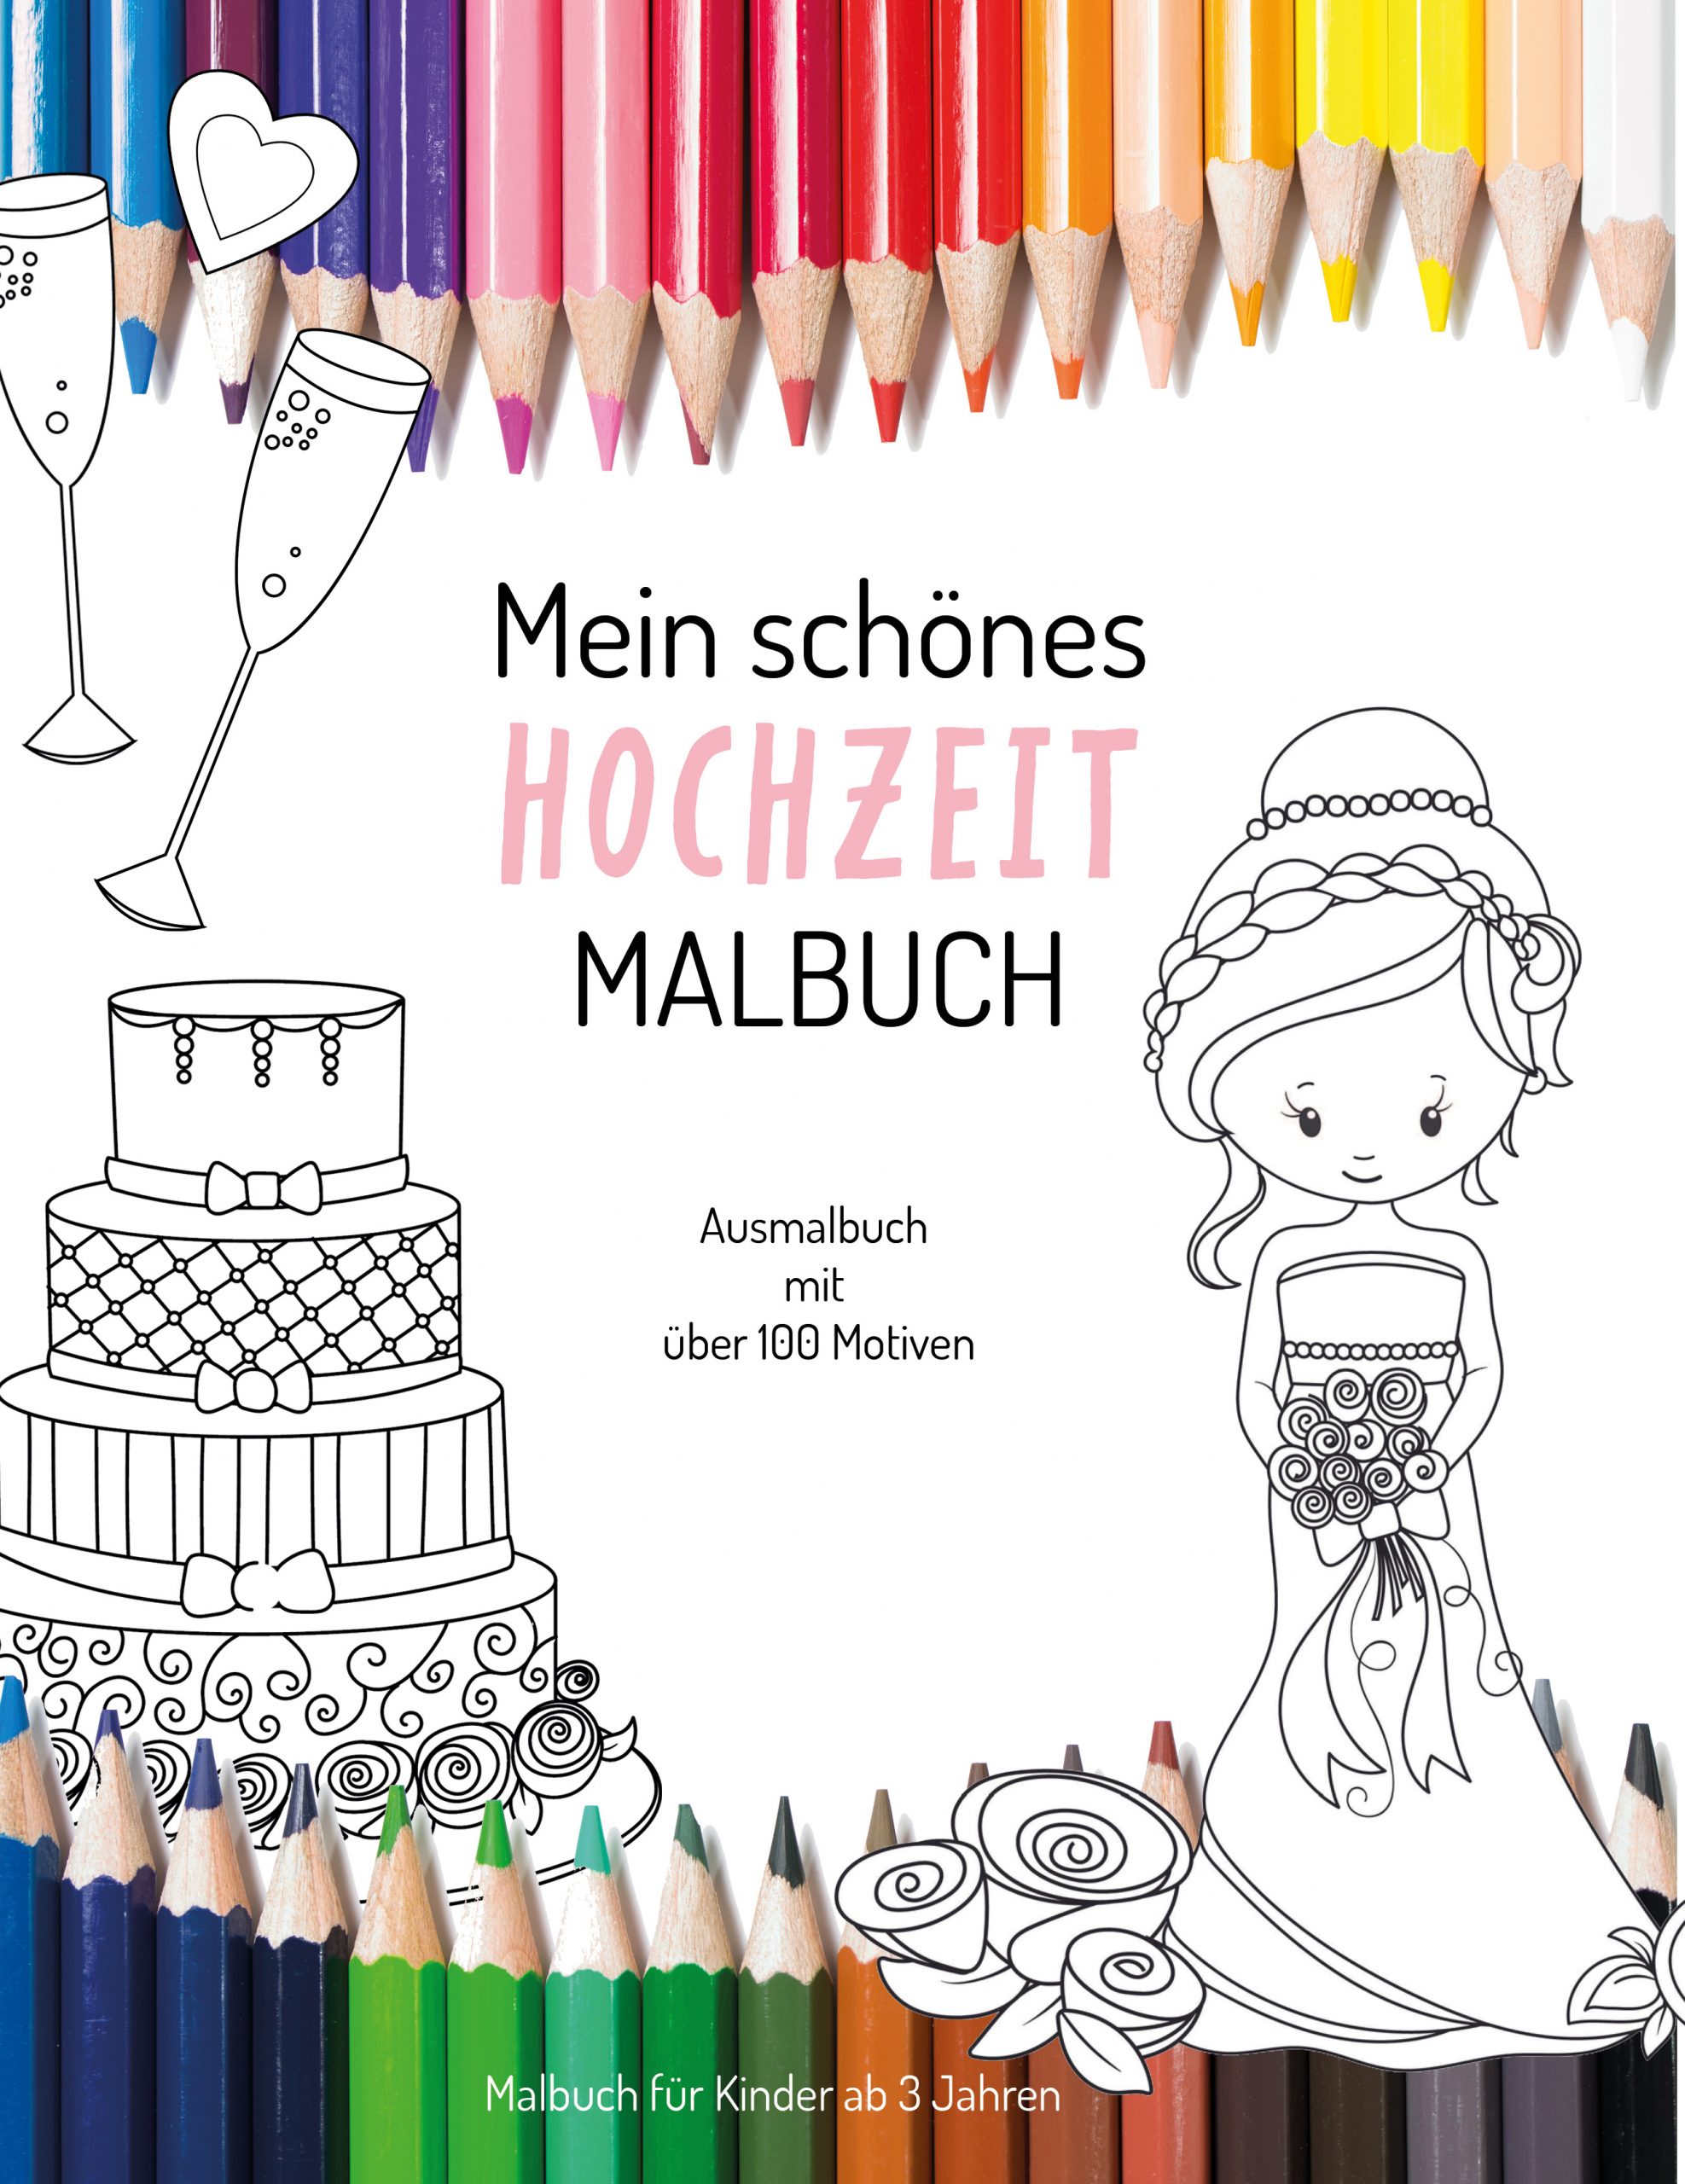 Hochzeit Malbuch Zum Download